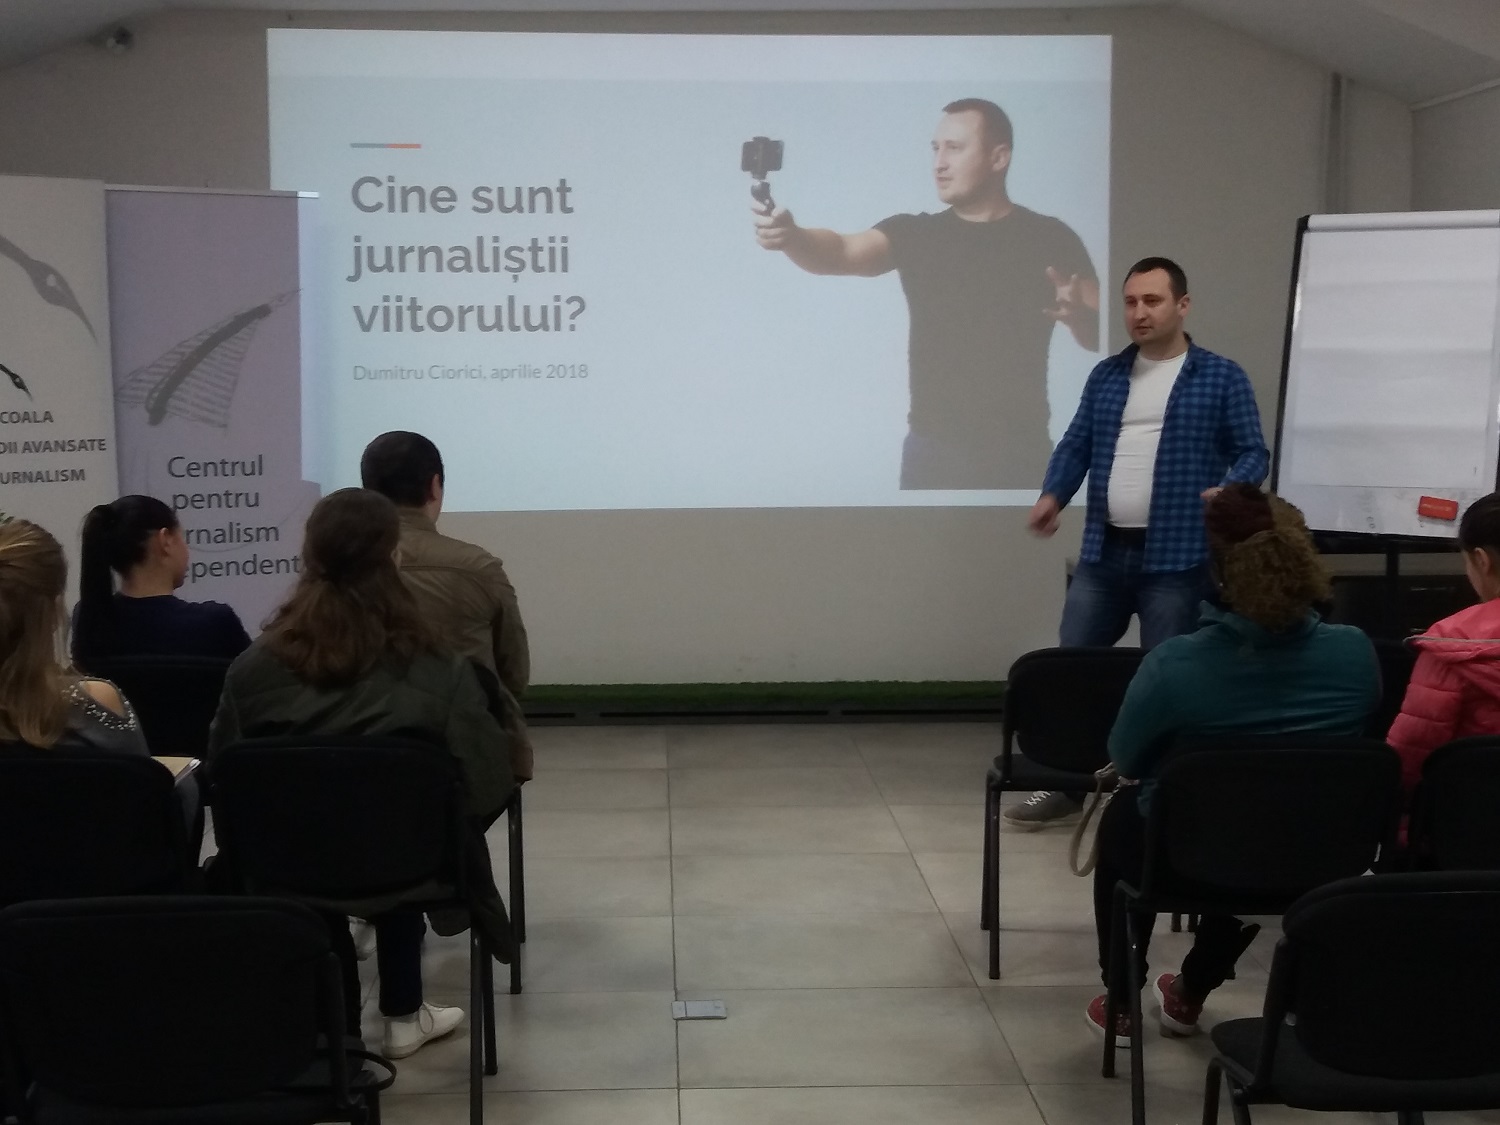 Dumitru Ciorici, la Clubul de discuții al ȘSAJ: „Jurnalistul viitorului va fi inovativ sau nu va fi deloc” 